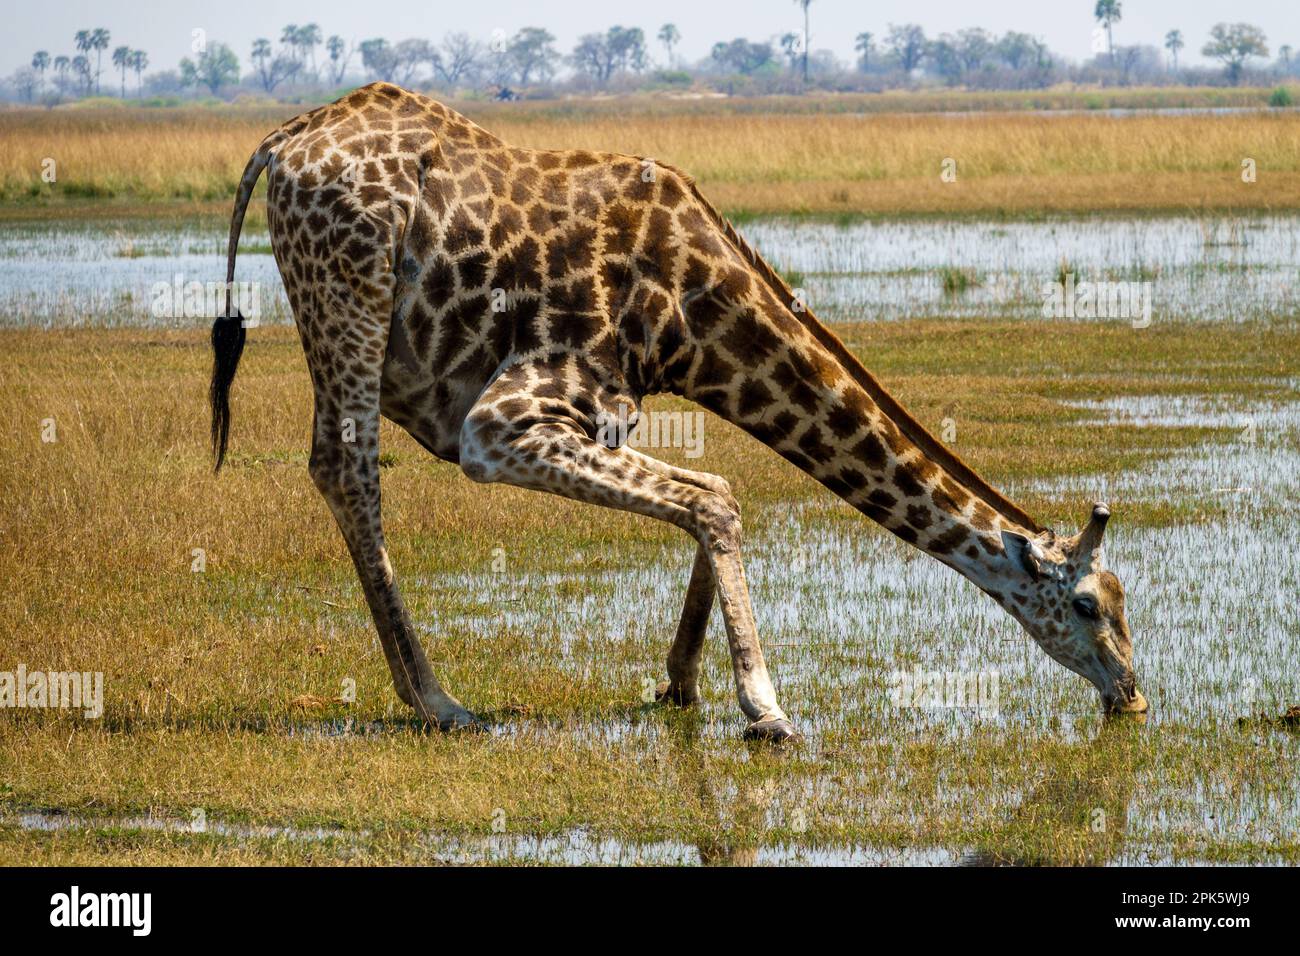 Giraffe leaning to drink water, Selinda Reserve, Botswana Stock Photo